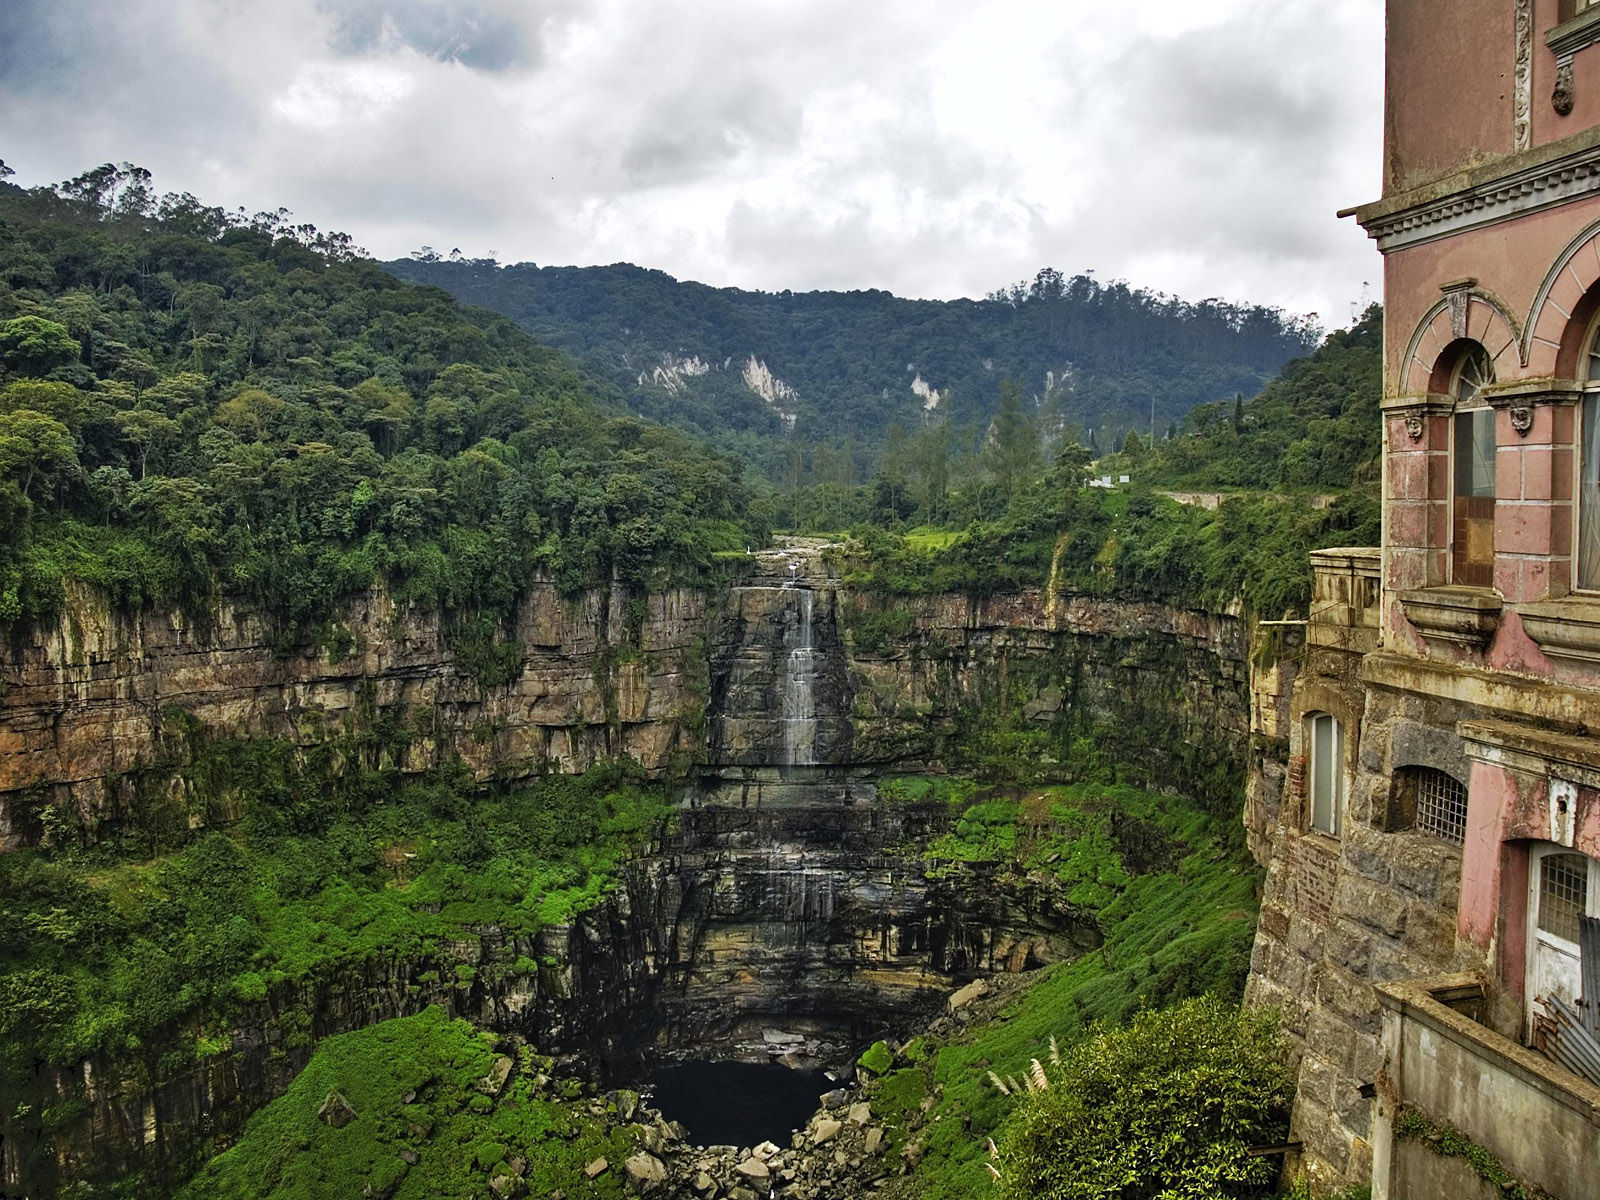 Колумбия. Водопад Текендама Колумбия. Tequendama Falls», Богота, Колумбия. Водопад Текендама в Южной Америке. Южная Америка Колумбия.